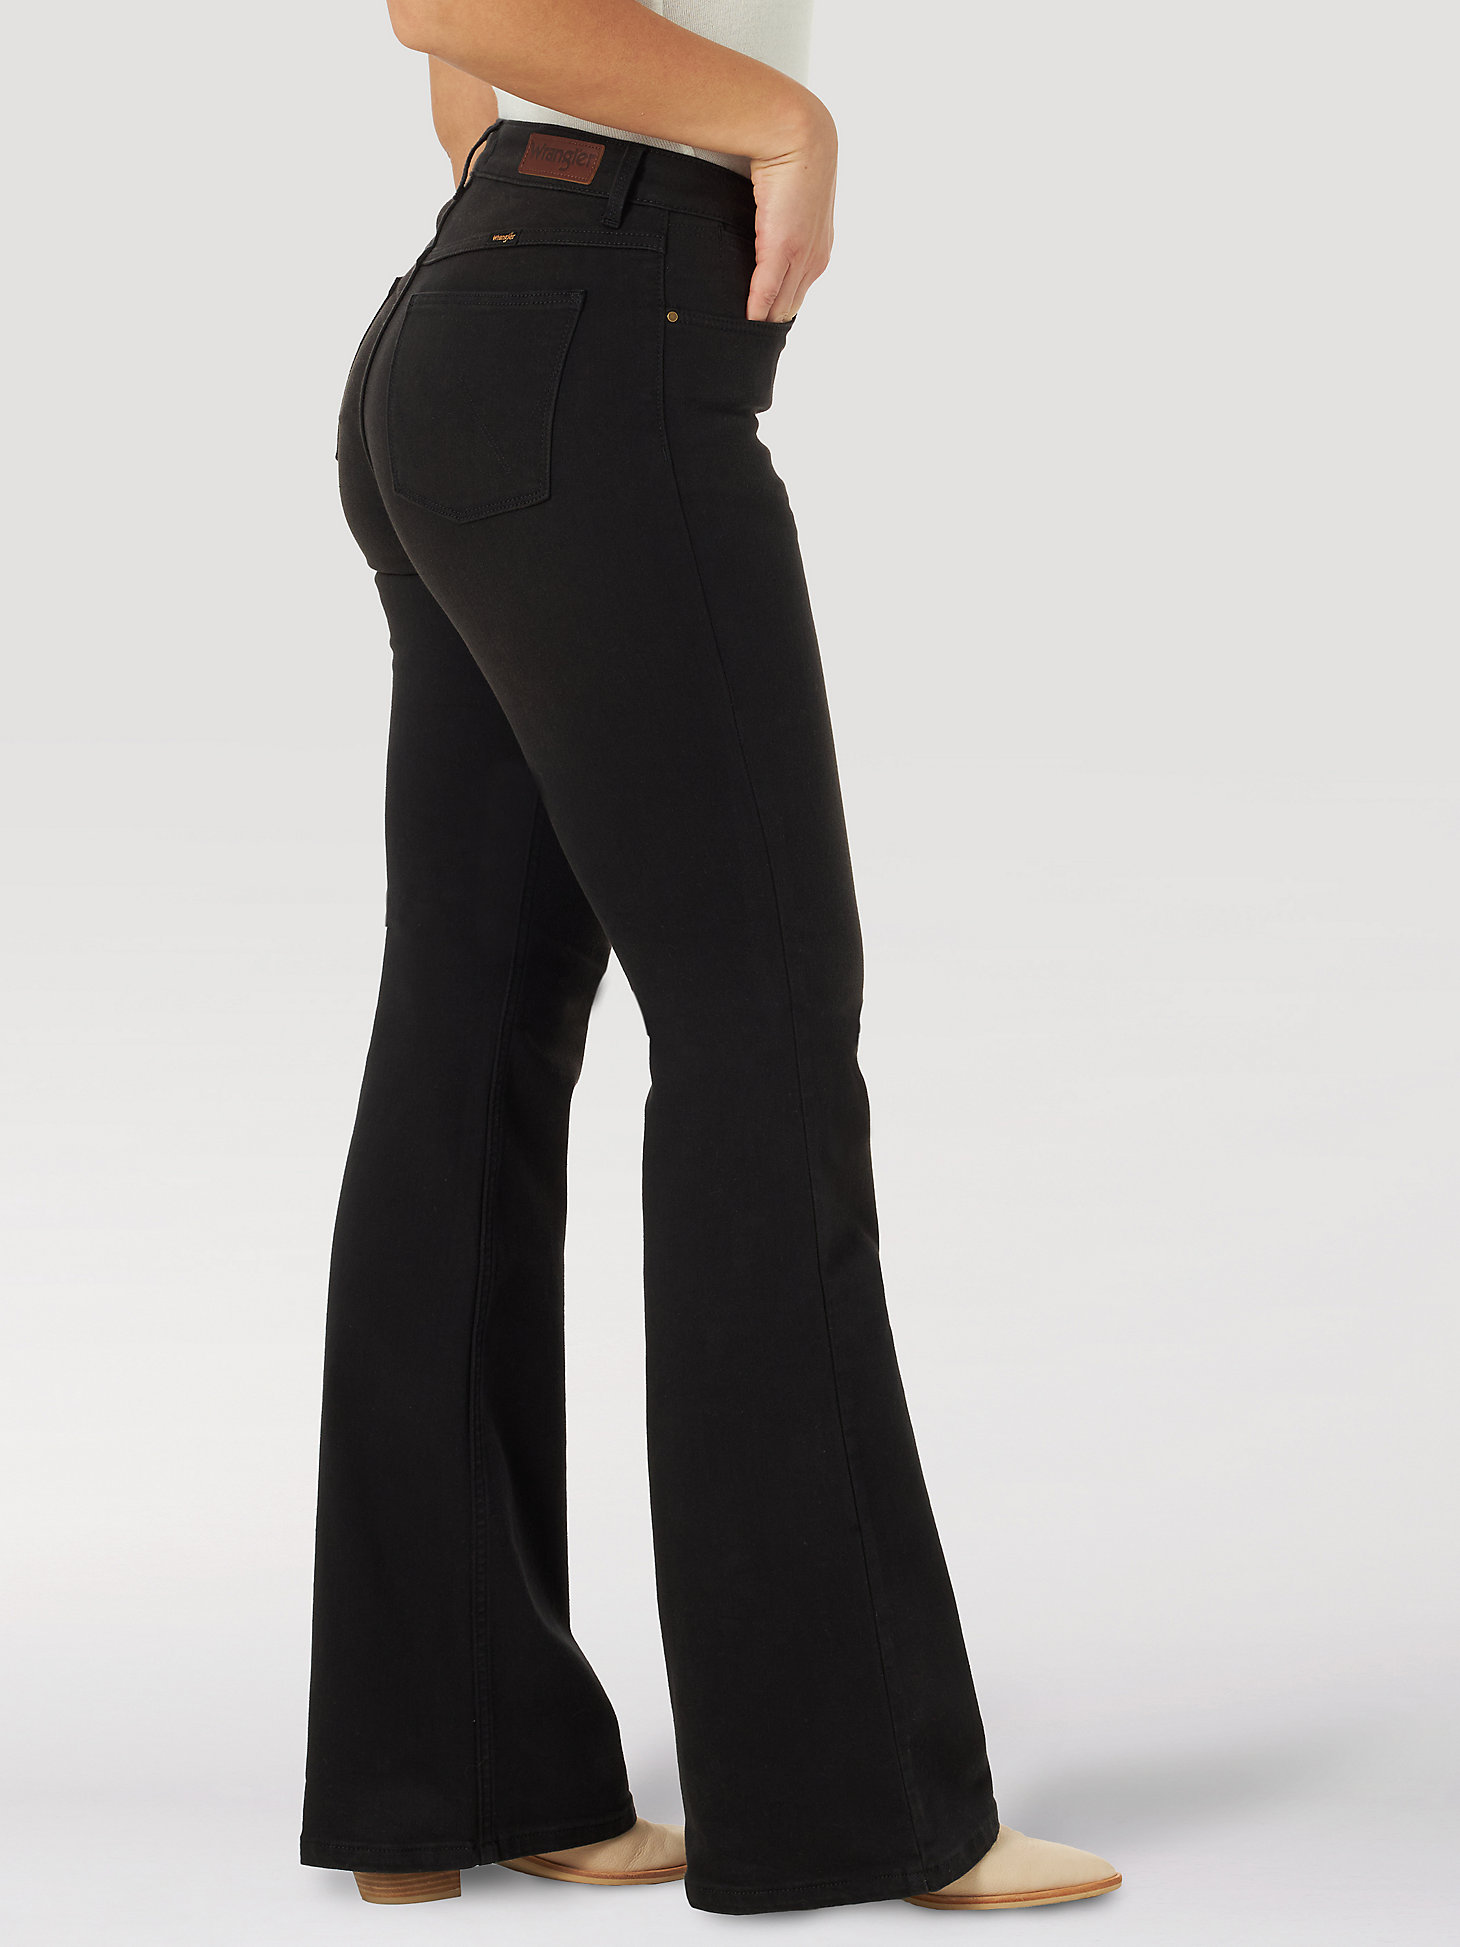 Women's Wrangler® Fierce Flare Jean in Black alternative view 2